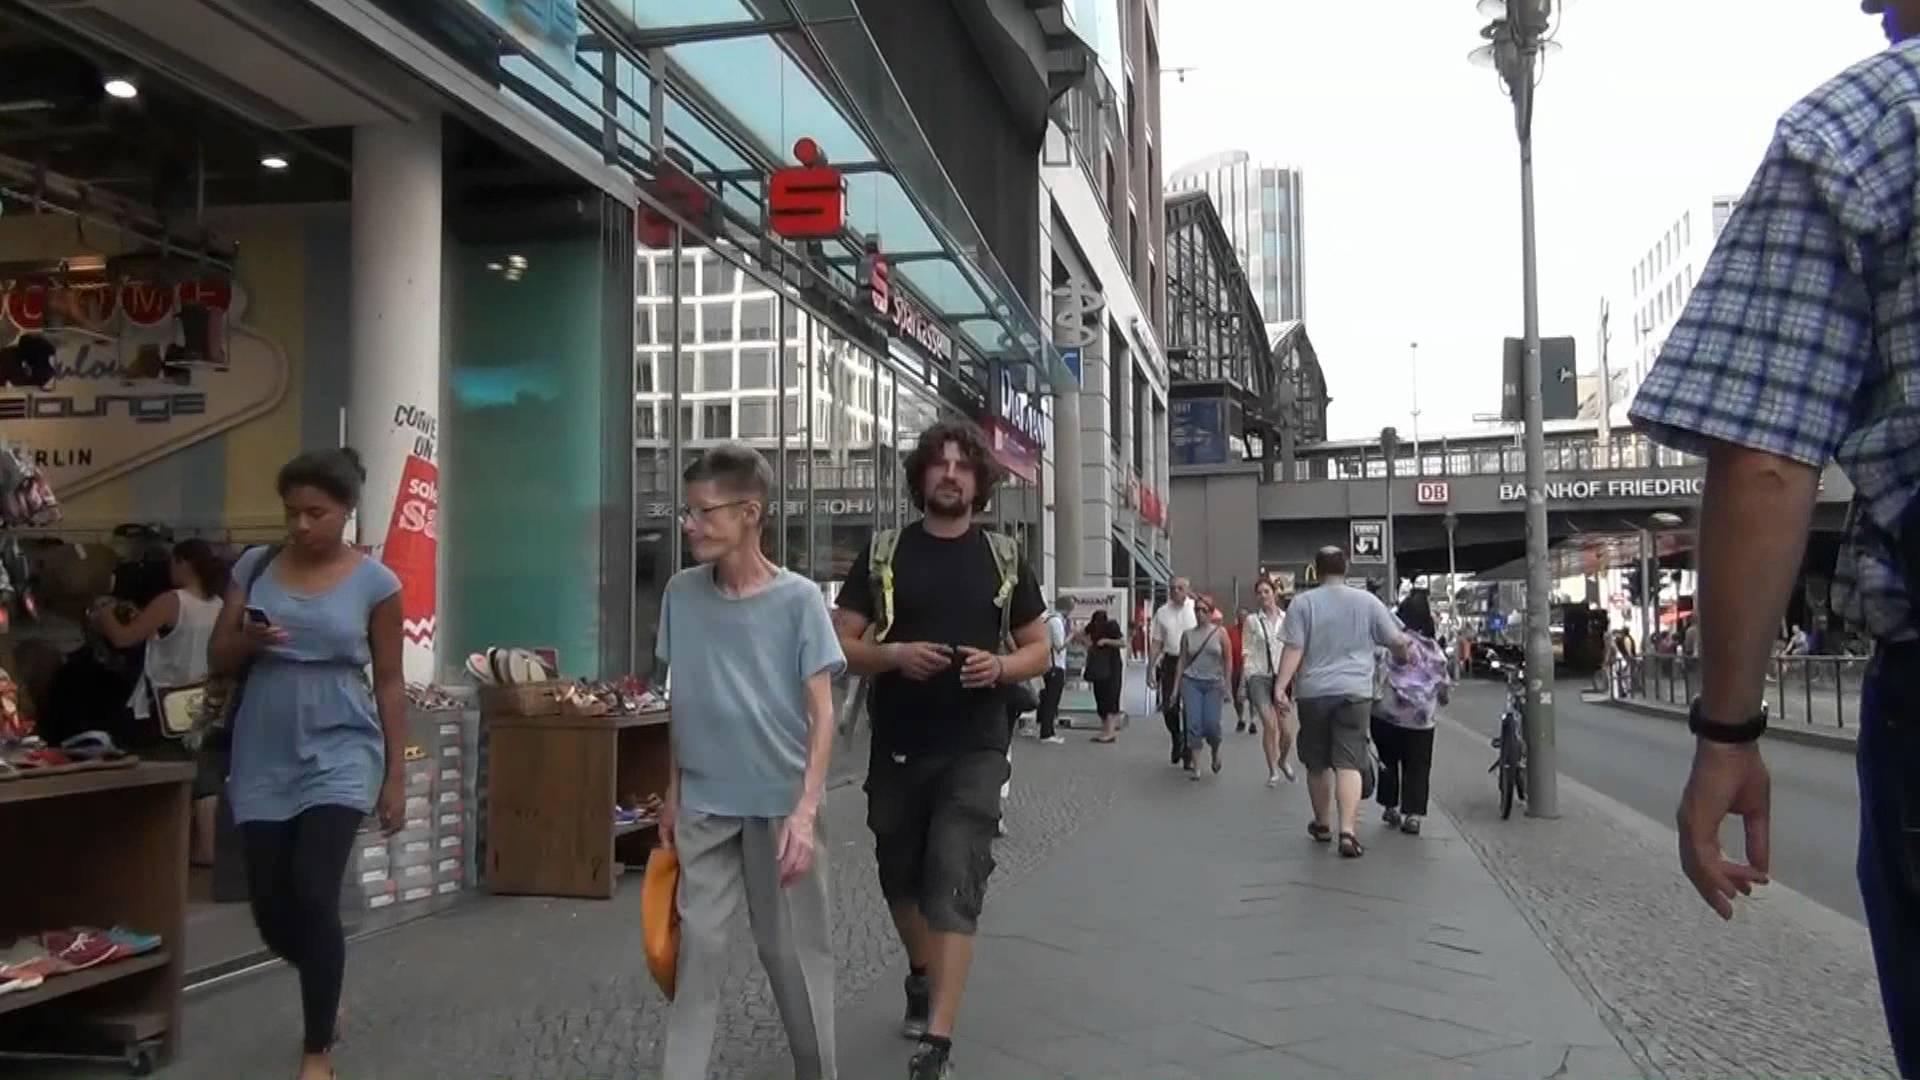 Germany: Berlin Friedrichstraße - People in the street - YouTube